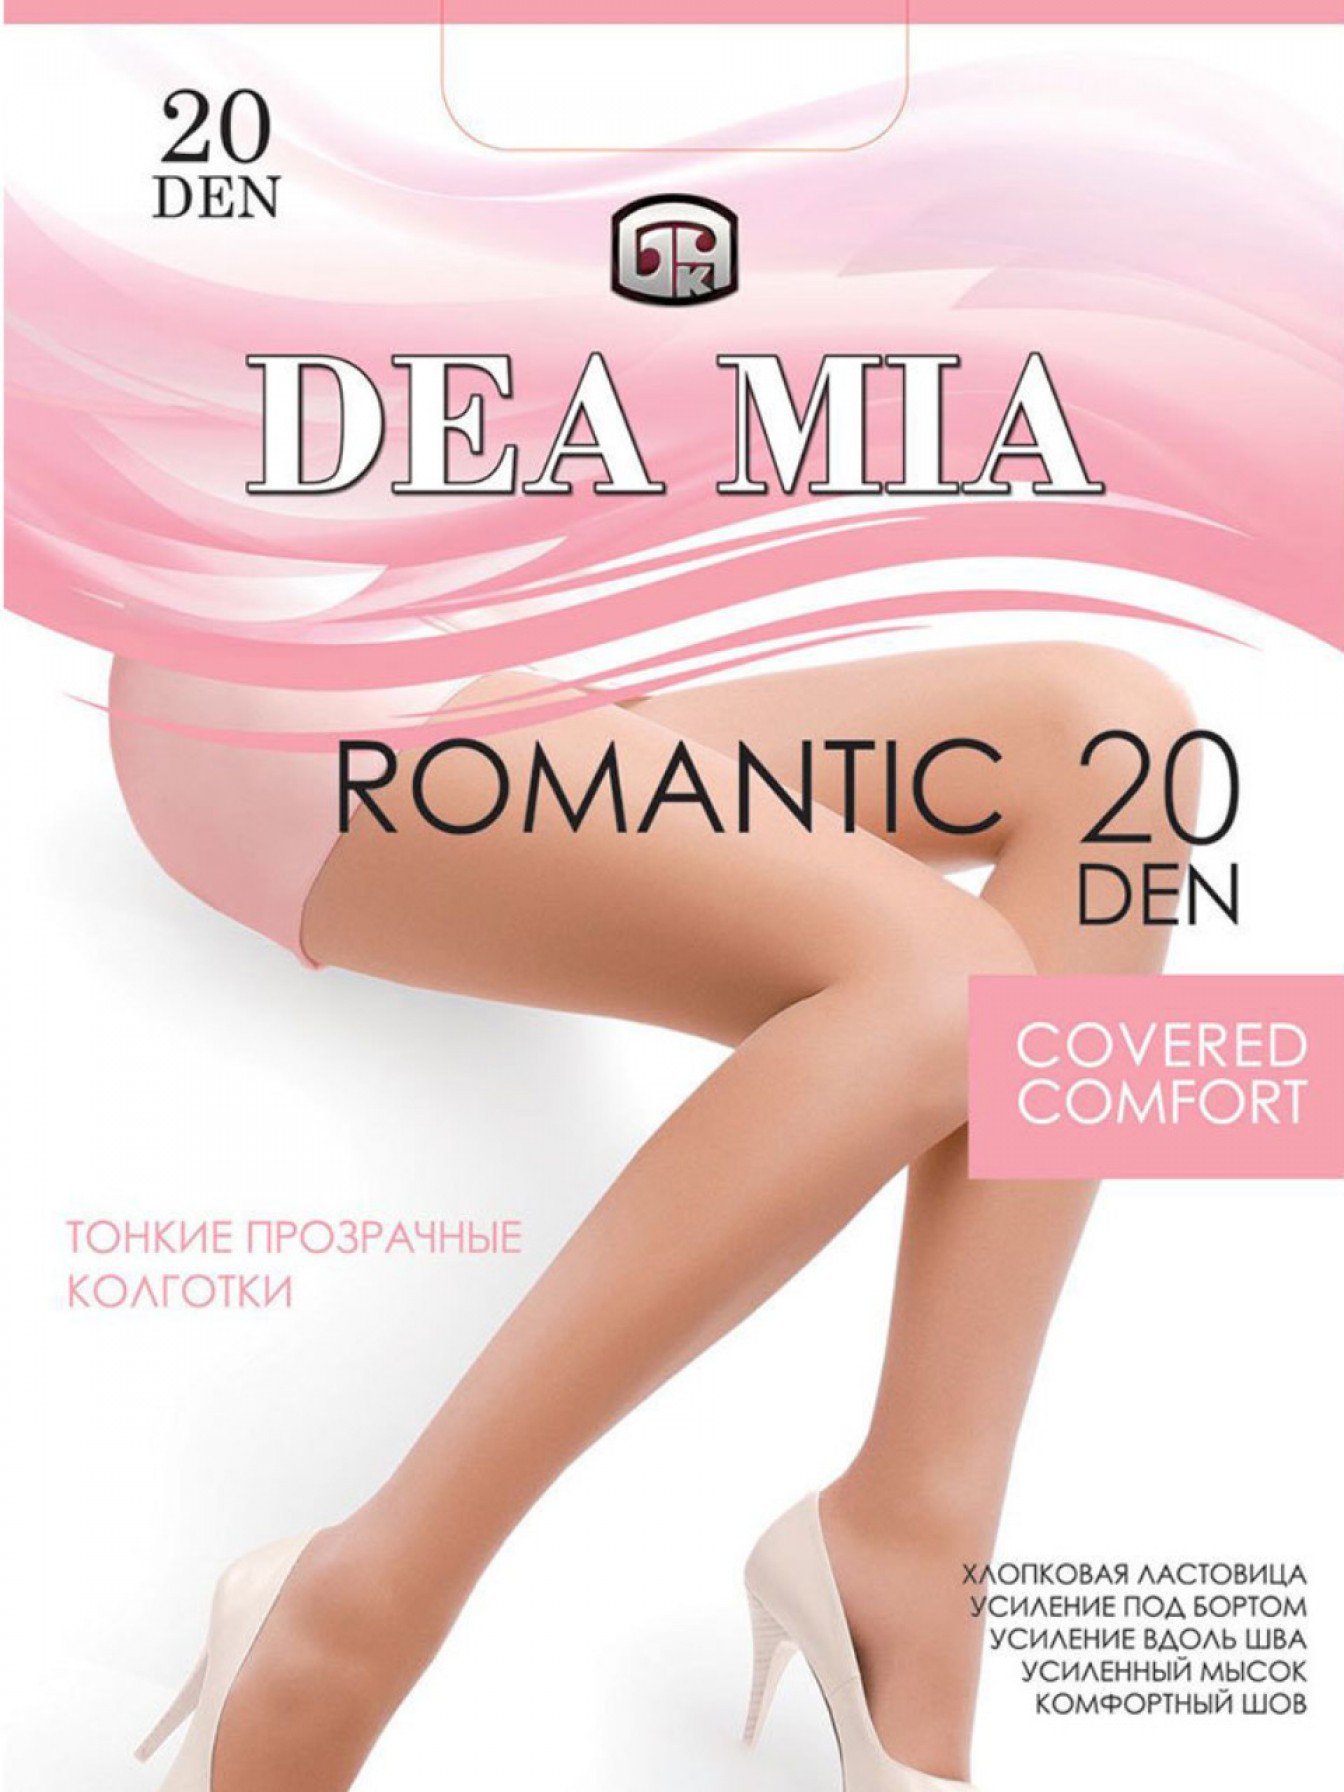 Купить тонкие шелковистые колготки Dea Mia Romantic 20